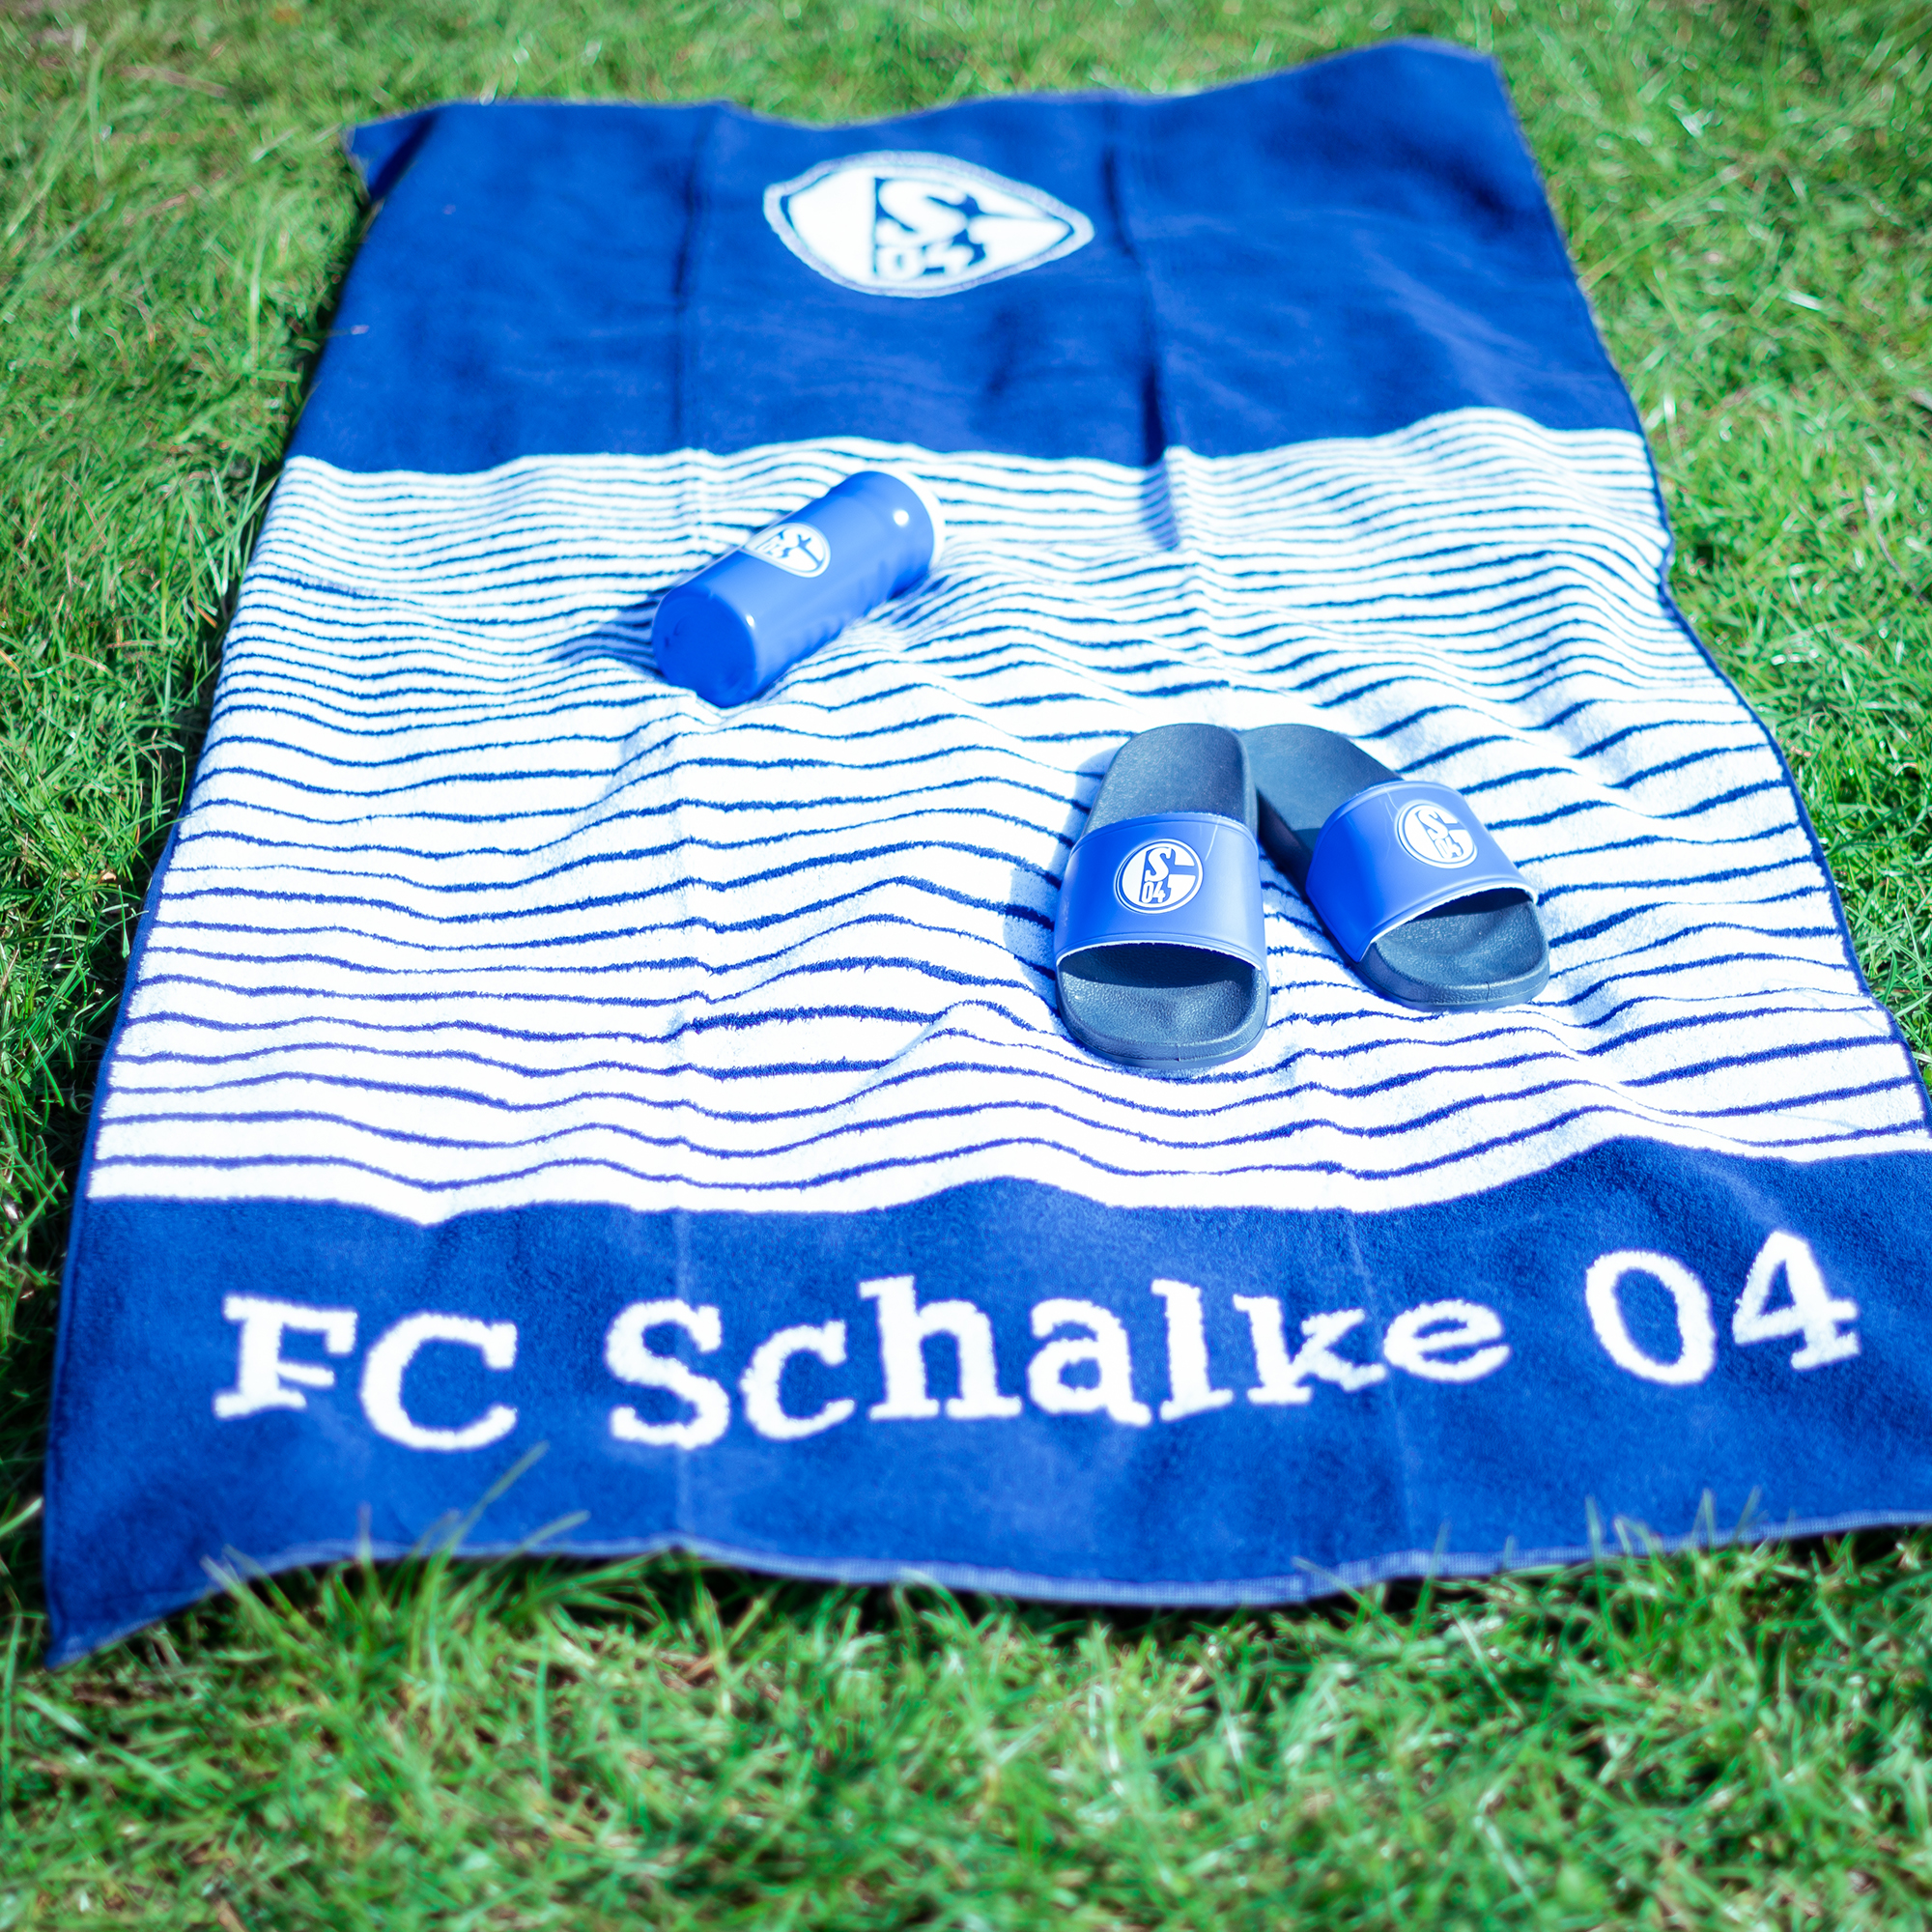 Badetuch Streifen Schalke 04